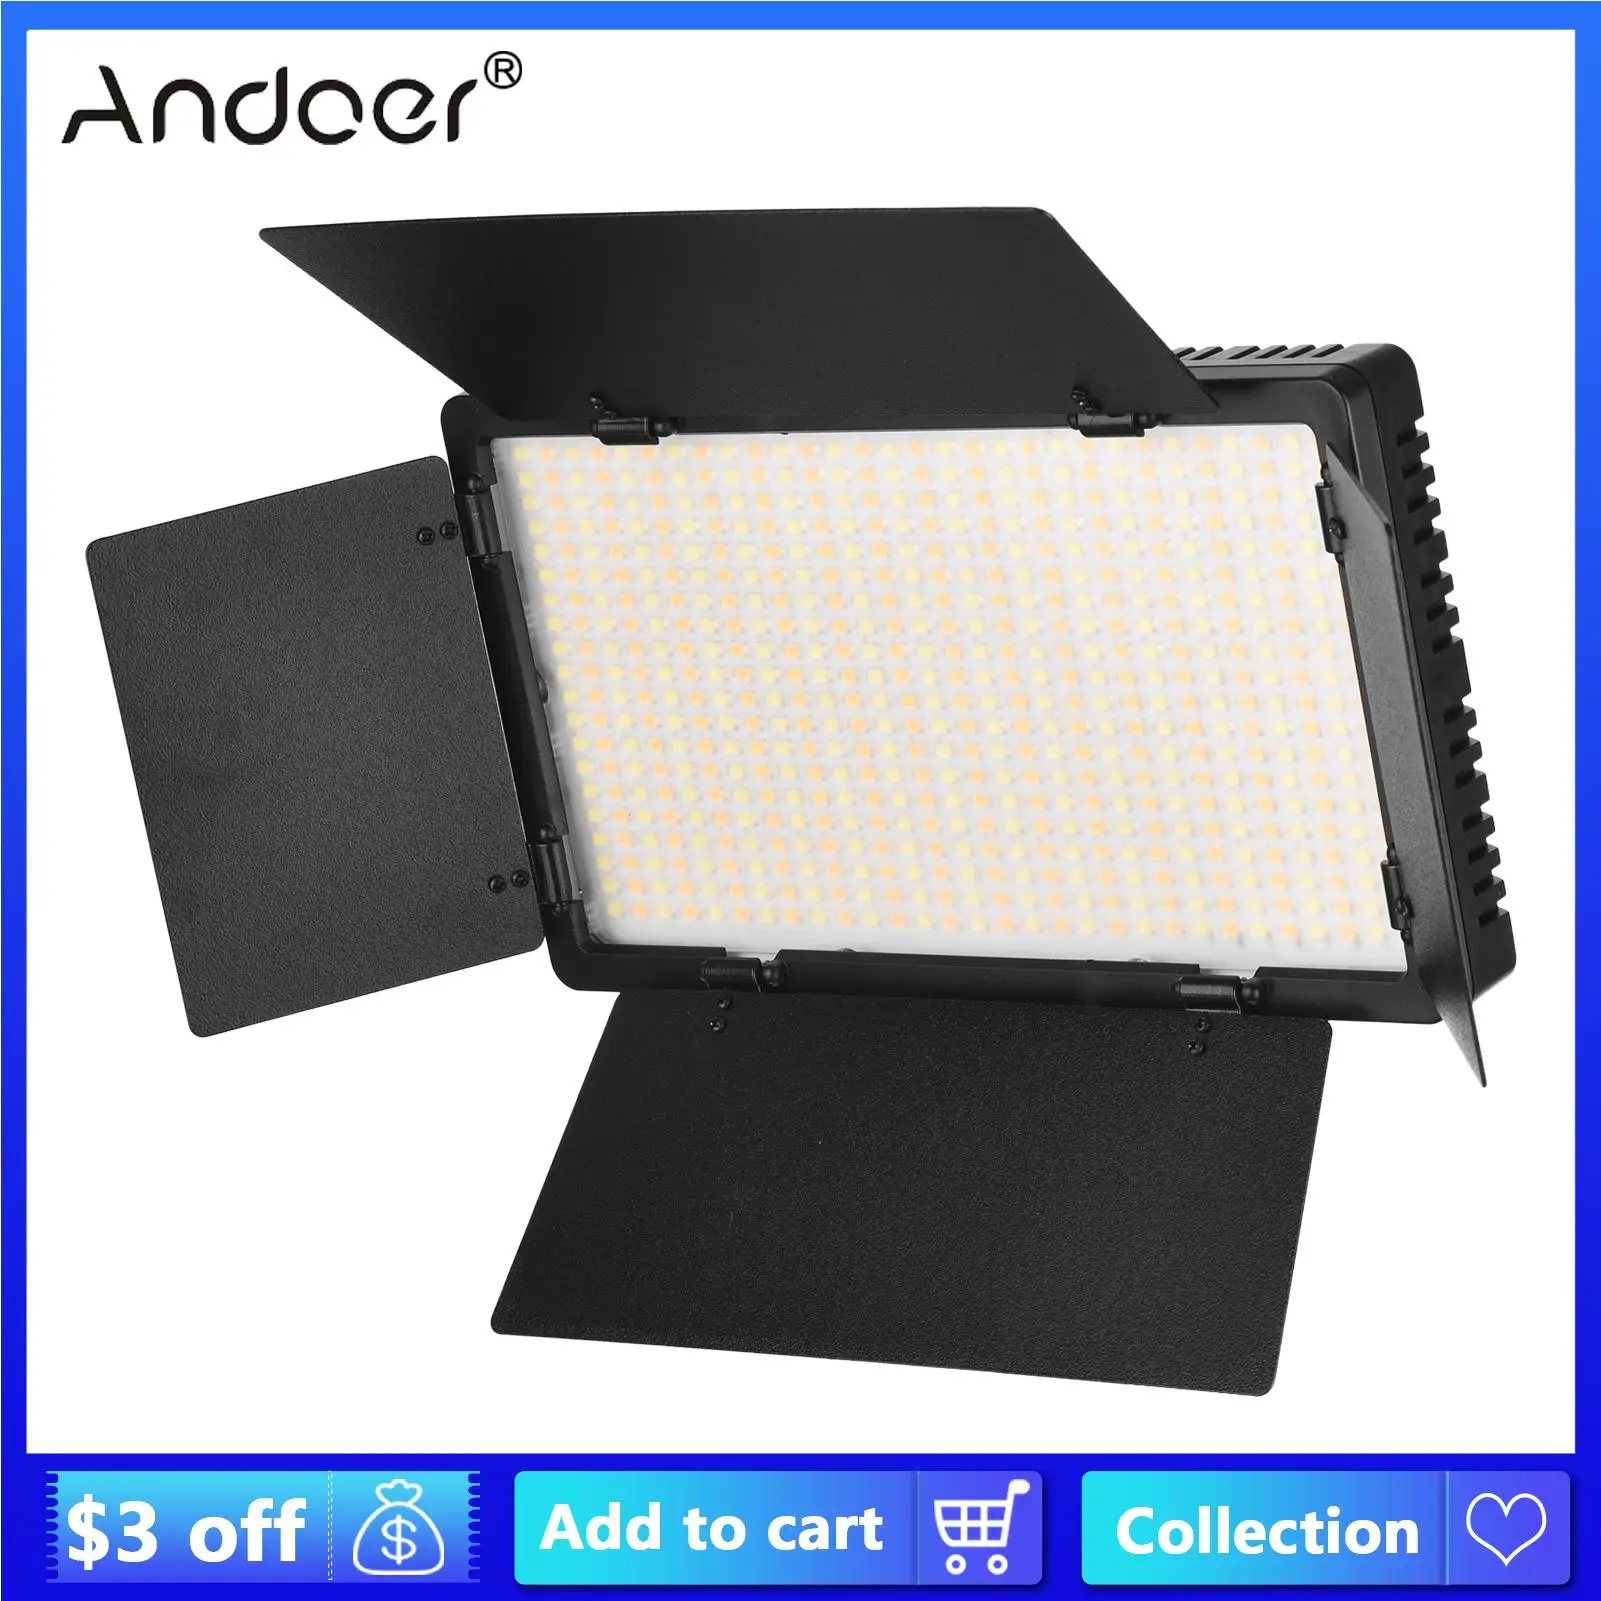 Andoer LED Video Light Профессиональная Световая Панель для Фотосъемки 3200-5600K с Дверцей Бара для Фотосъемки Видео В Прямом Эфире Макияж